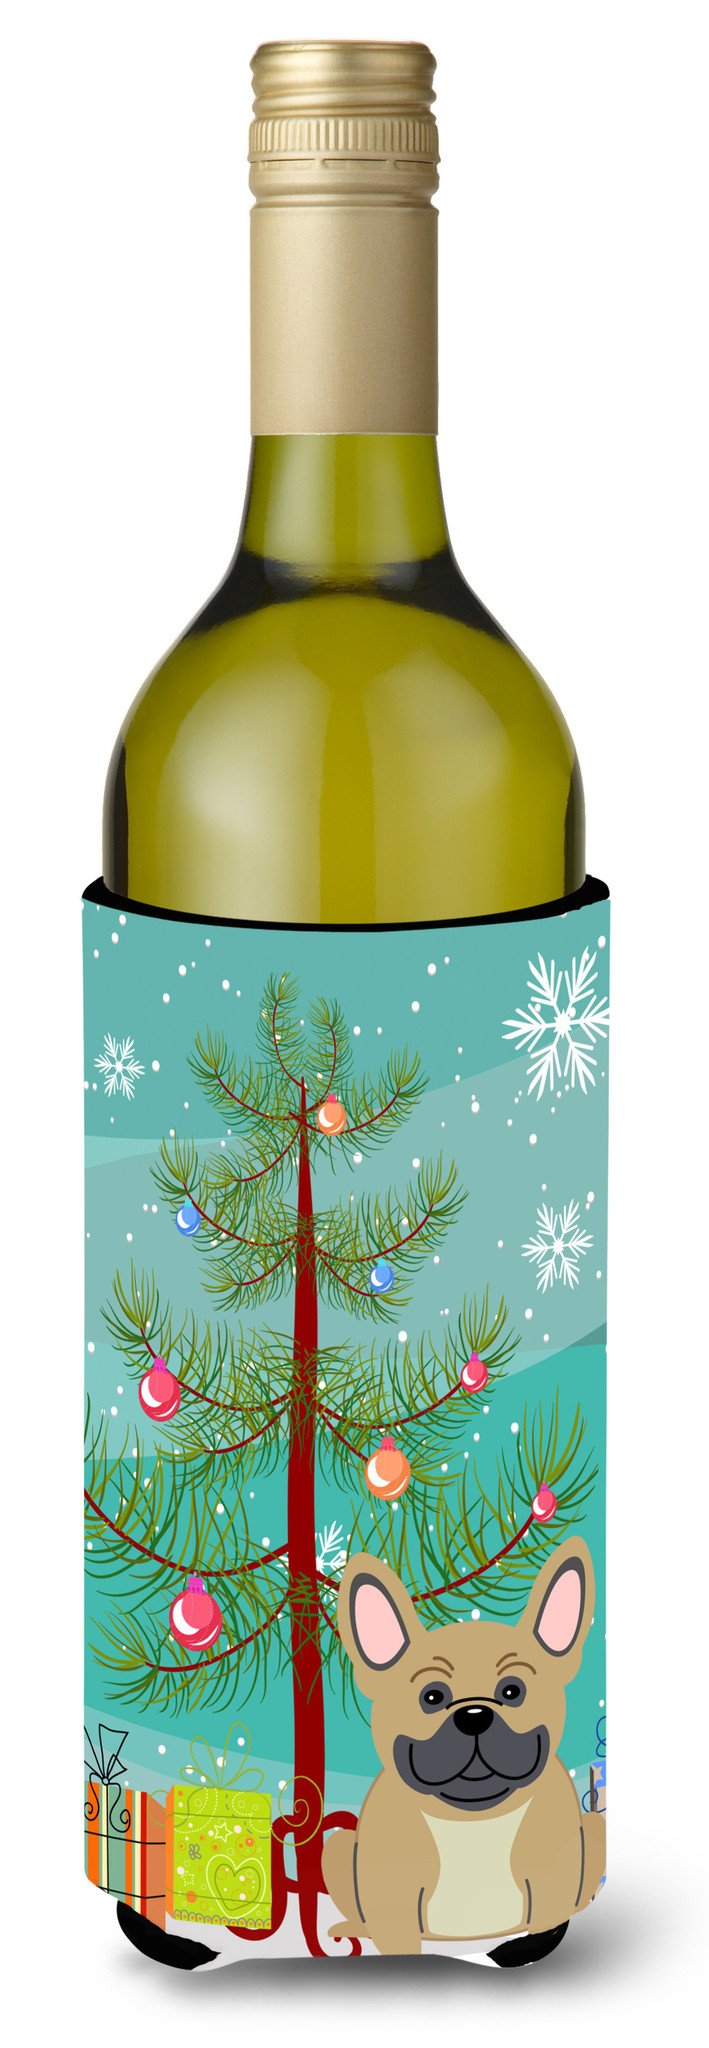 Merry Christmas Tree French Bulldog Cream Wine Bottle Beverge Insulator Hugger BB4135LITERK by Caroline's Treasures